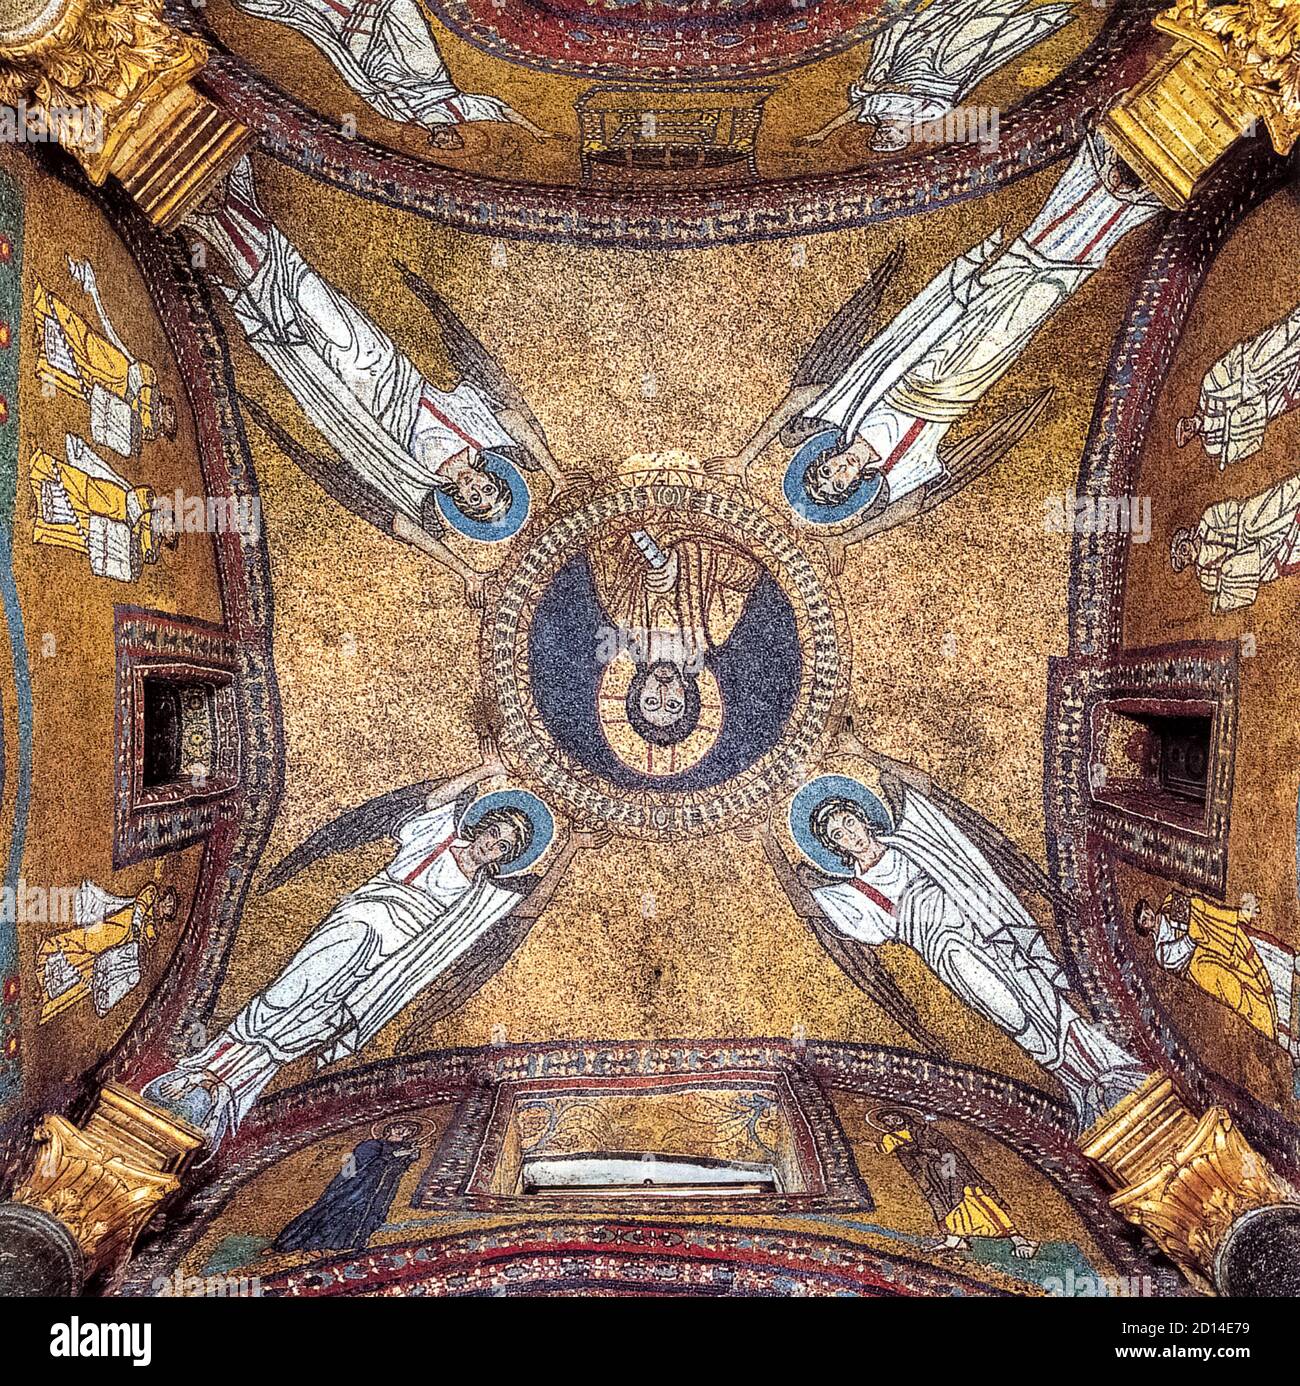 Italia Lazio Roma Basilica di Santa Pressede - Cappella di S. Zenone - volta Foto Stock